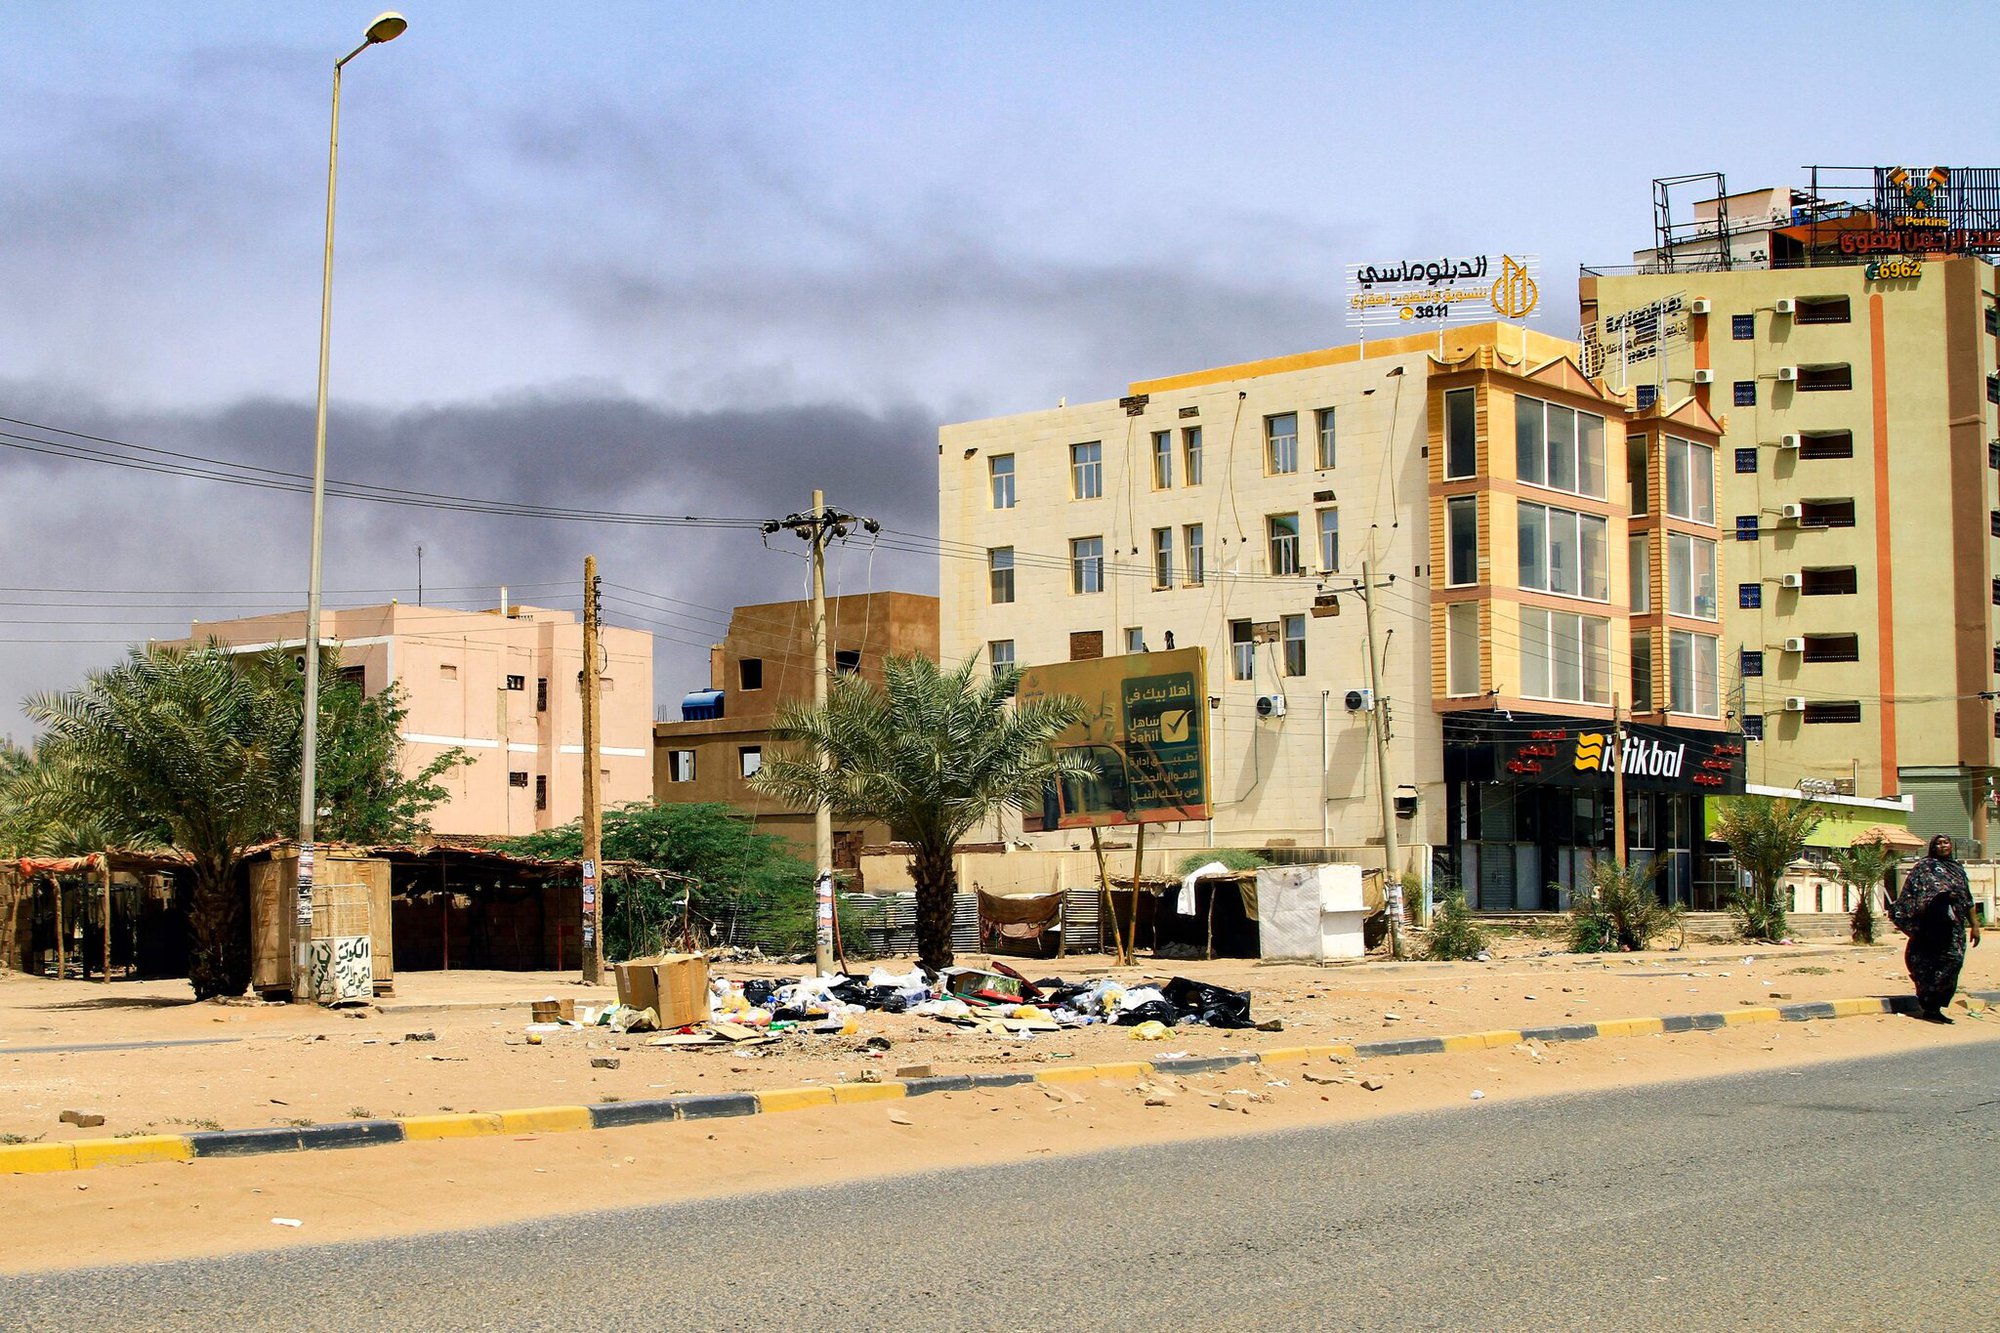 Theo dõi chiến sự ở Sudan: Bản đồ và video mới nhất - Ảnh 4.